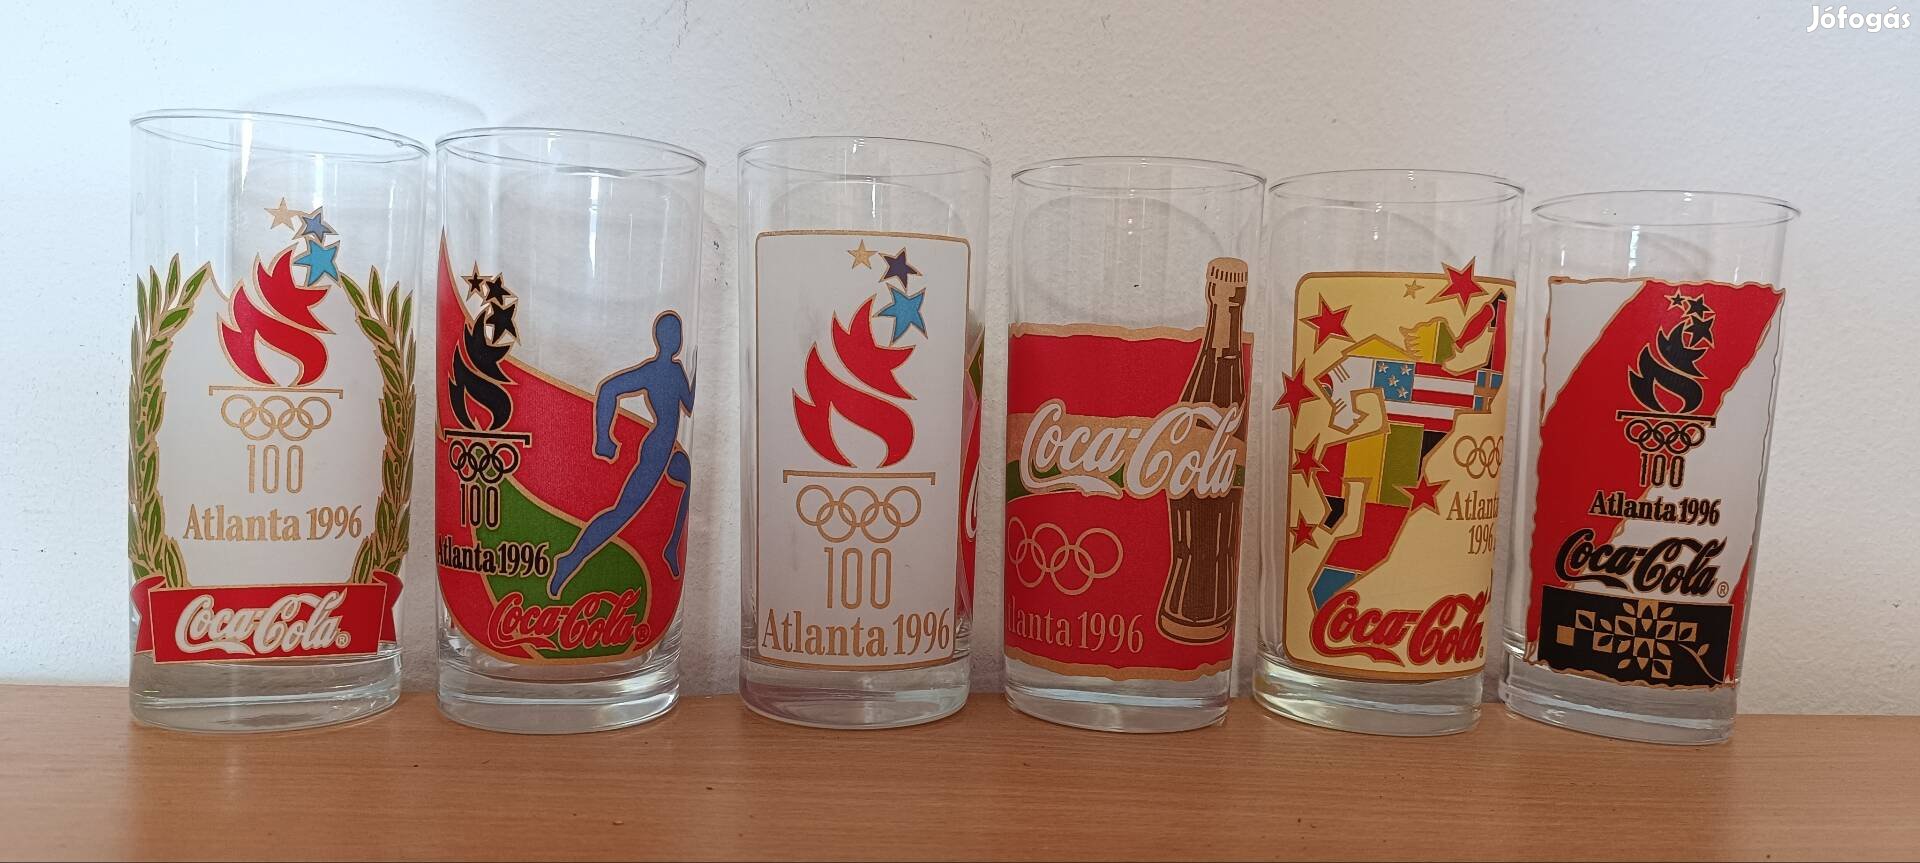 1996-os atlantai olimpiára kiadott Coca colás pohár készlet